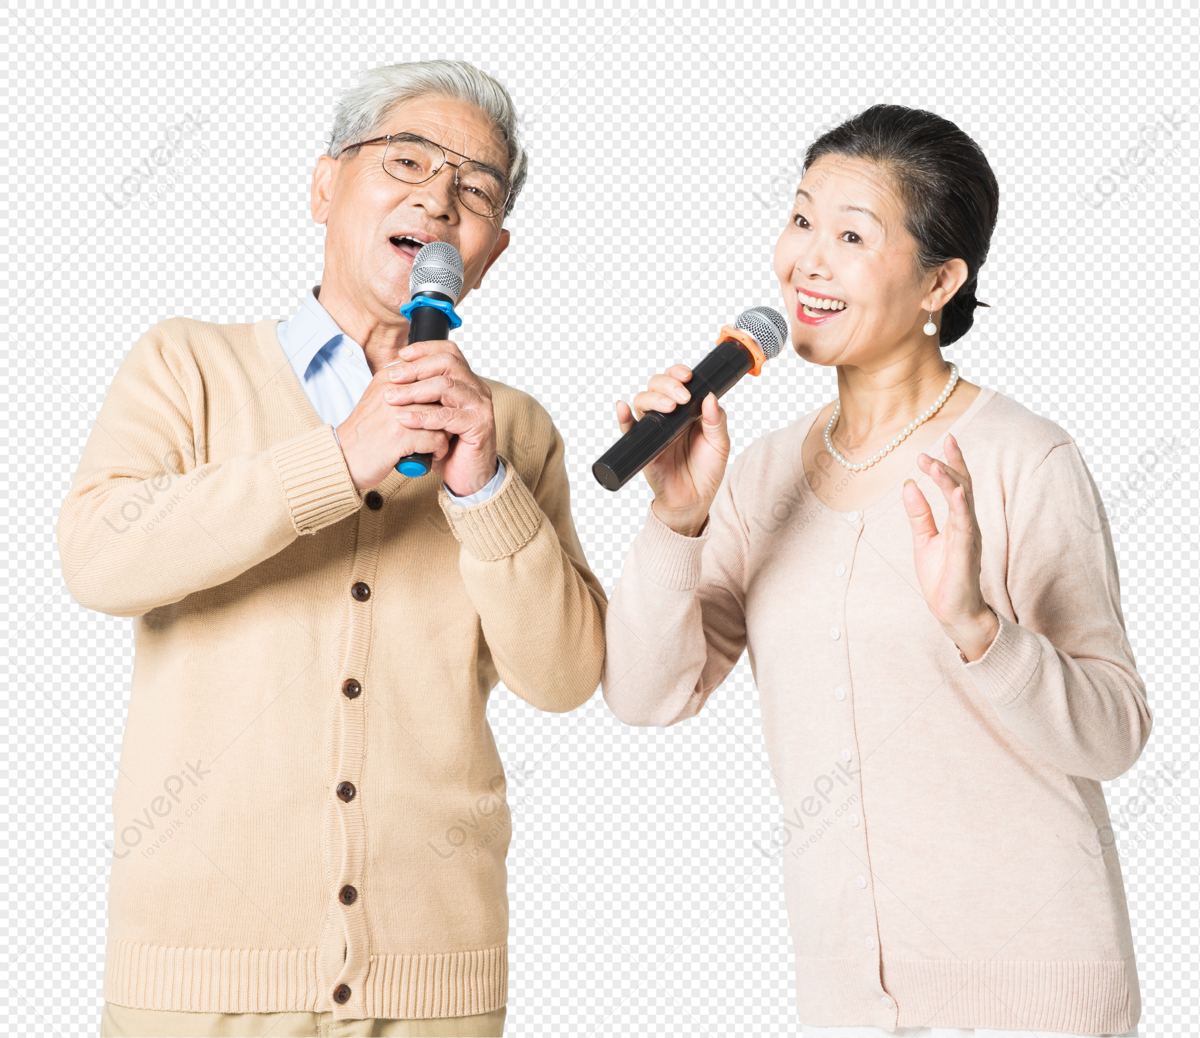 free clipart female singer duet